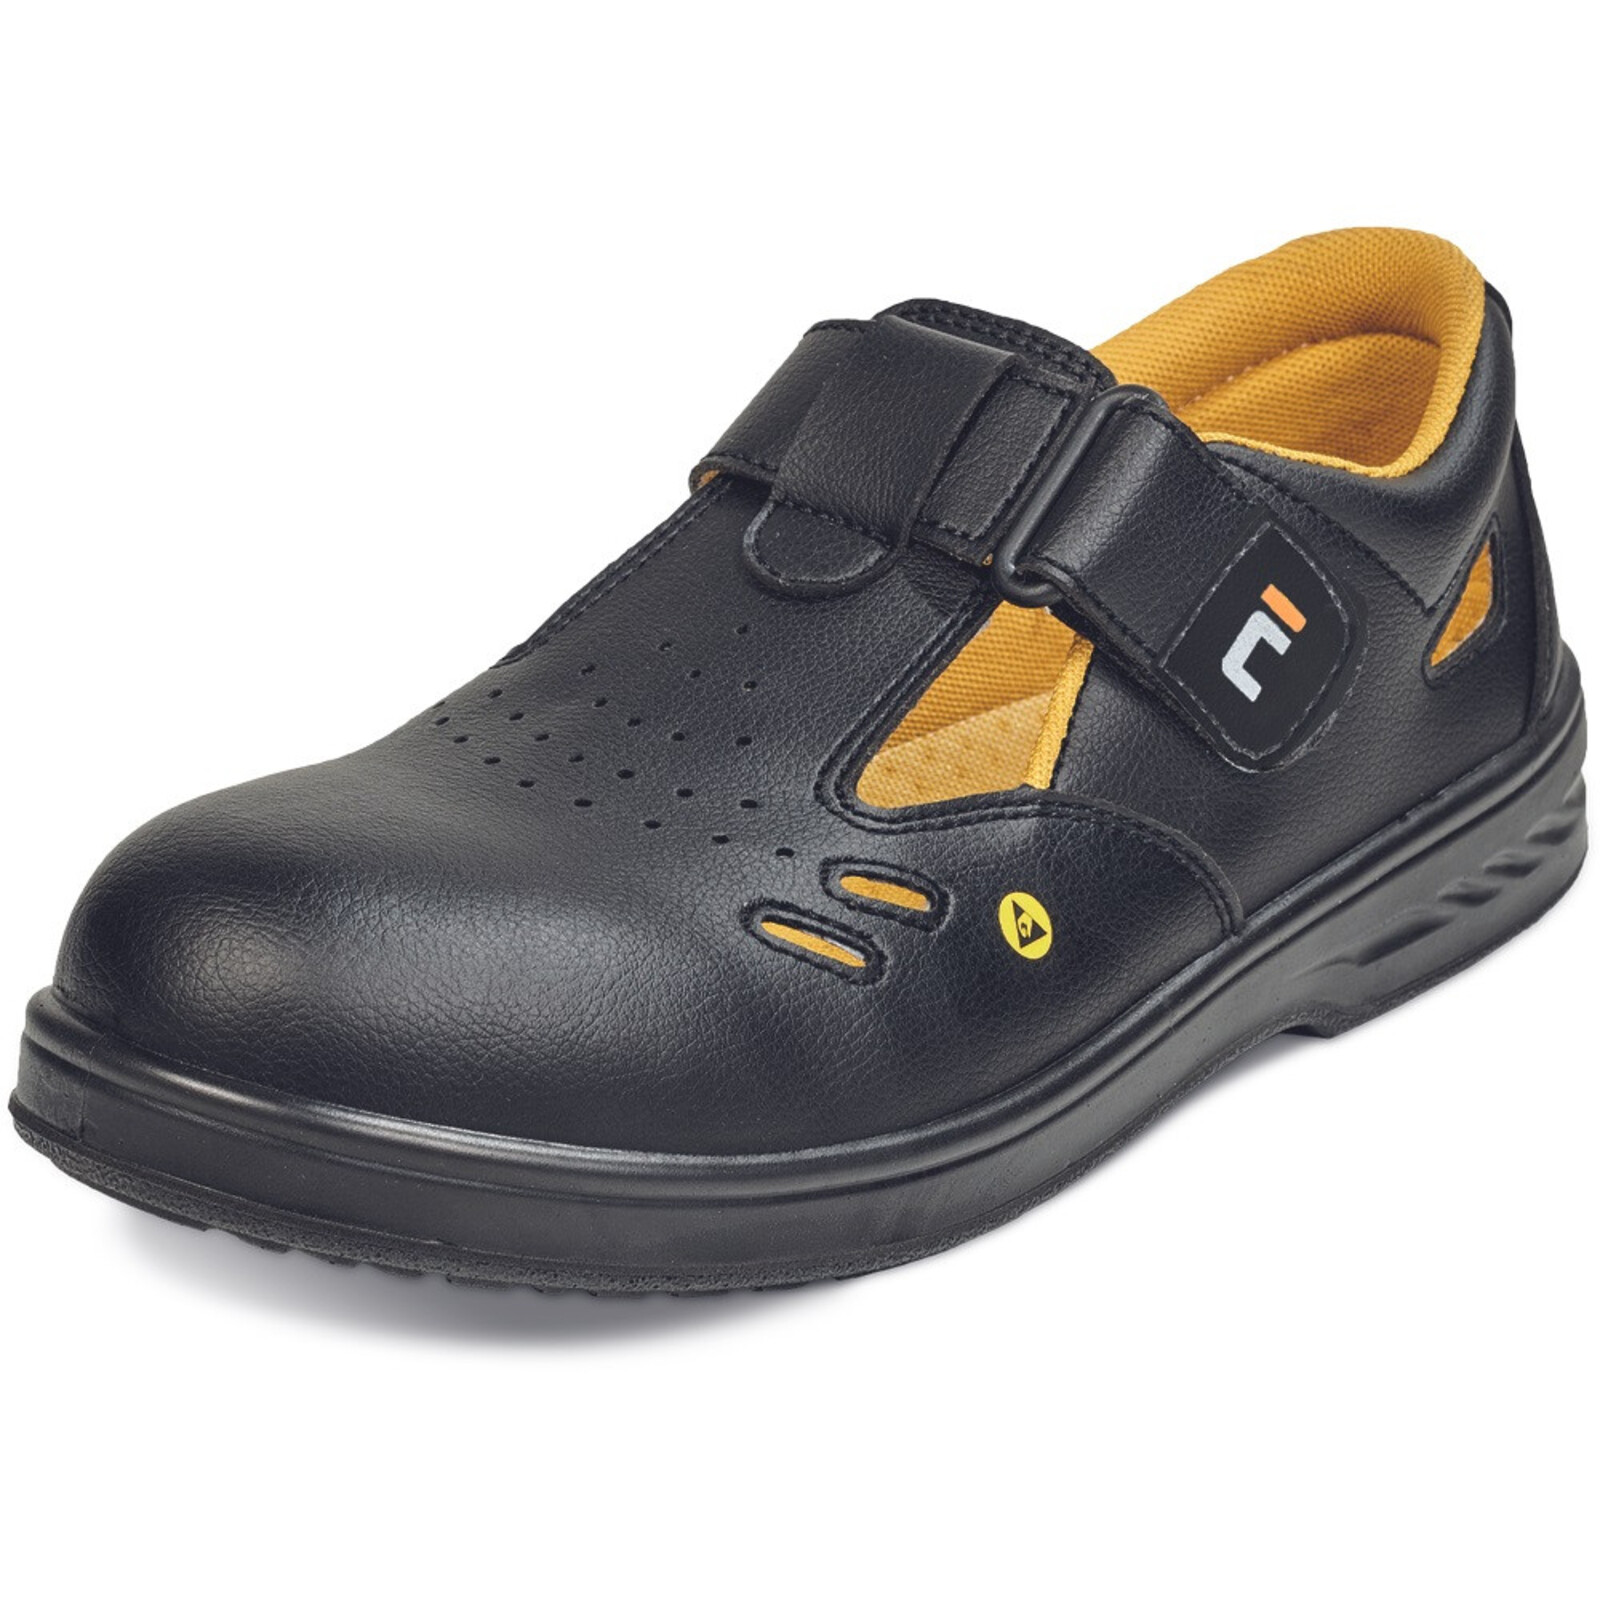 Bezpečnostné sandále Raven MF ESD S1 SRC - veľkosť: 36, farba: čierna